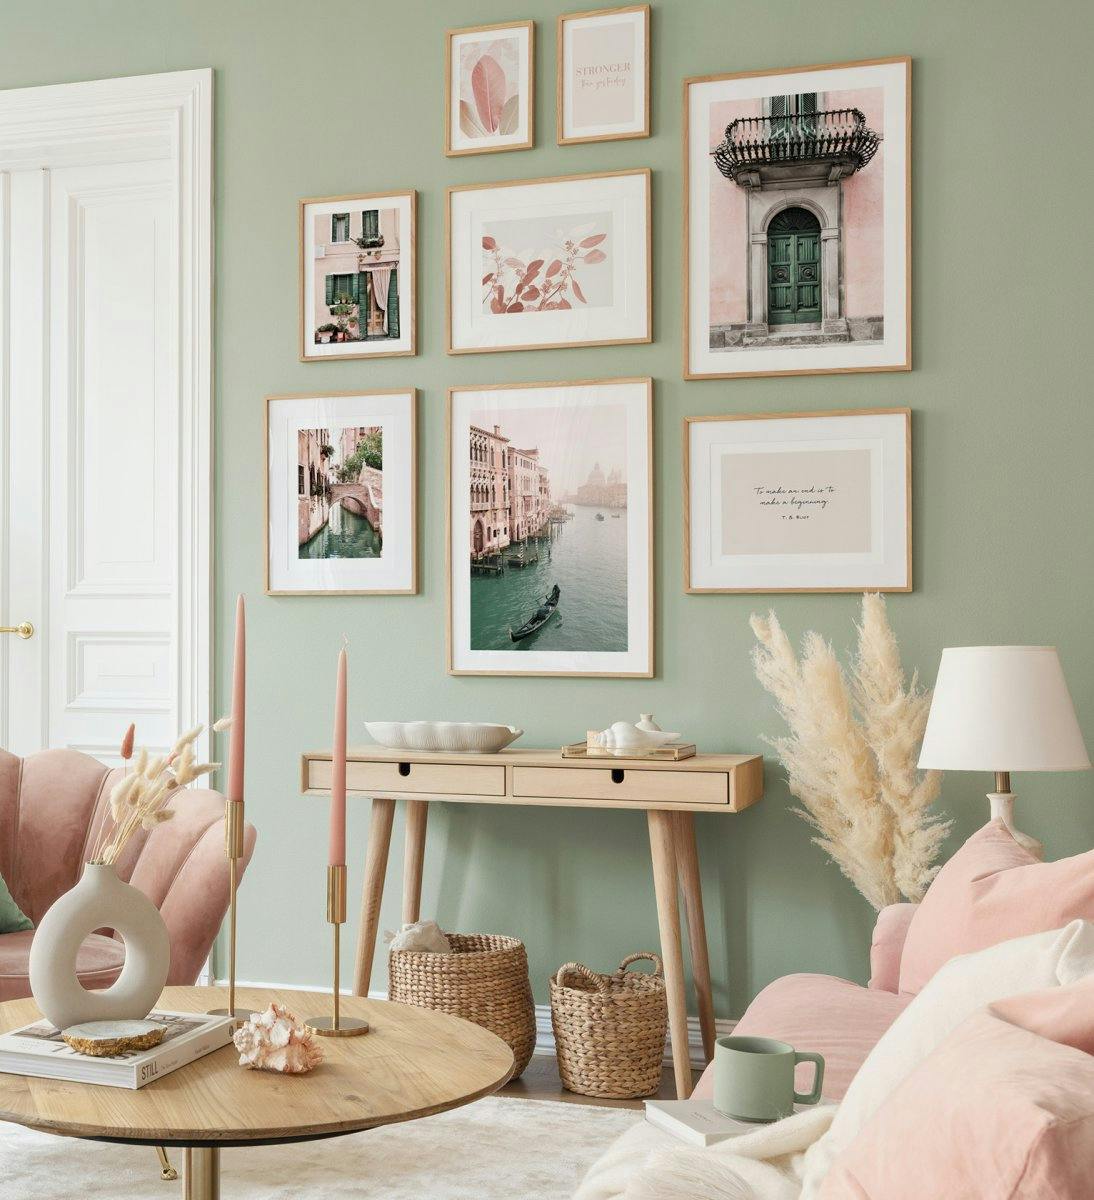 Fotografier i pastellfarger skaper en leken og frisk stemning i stuen